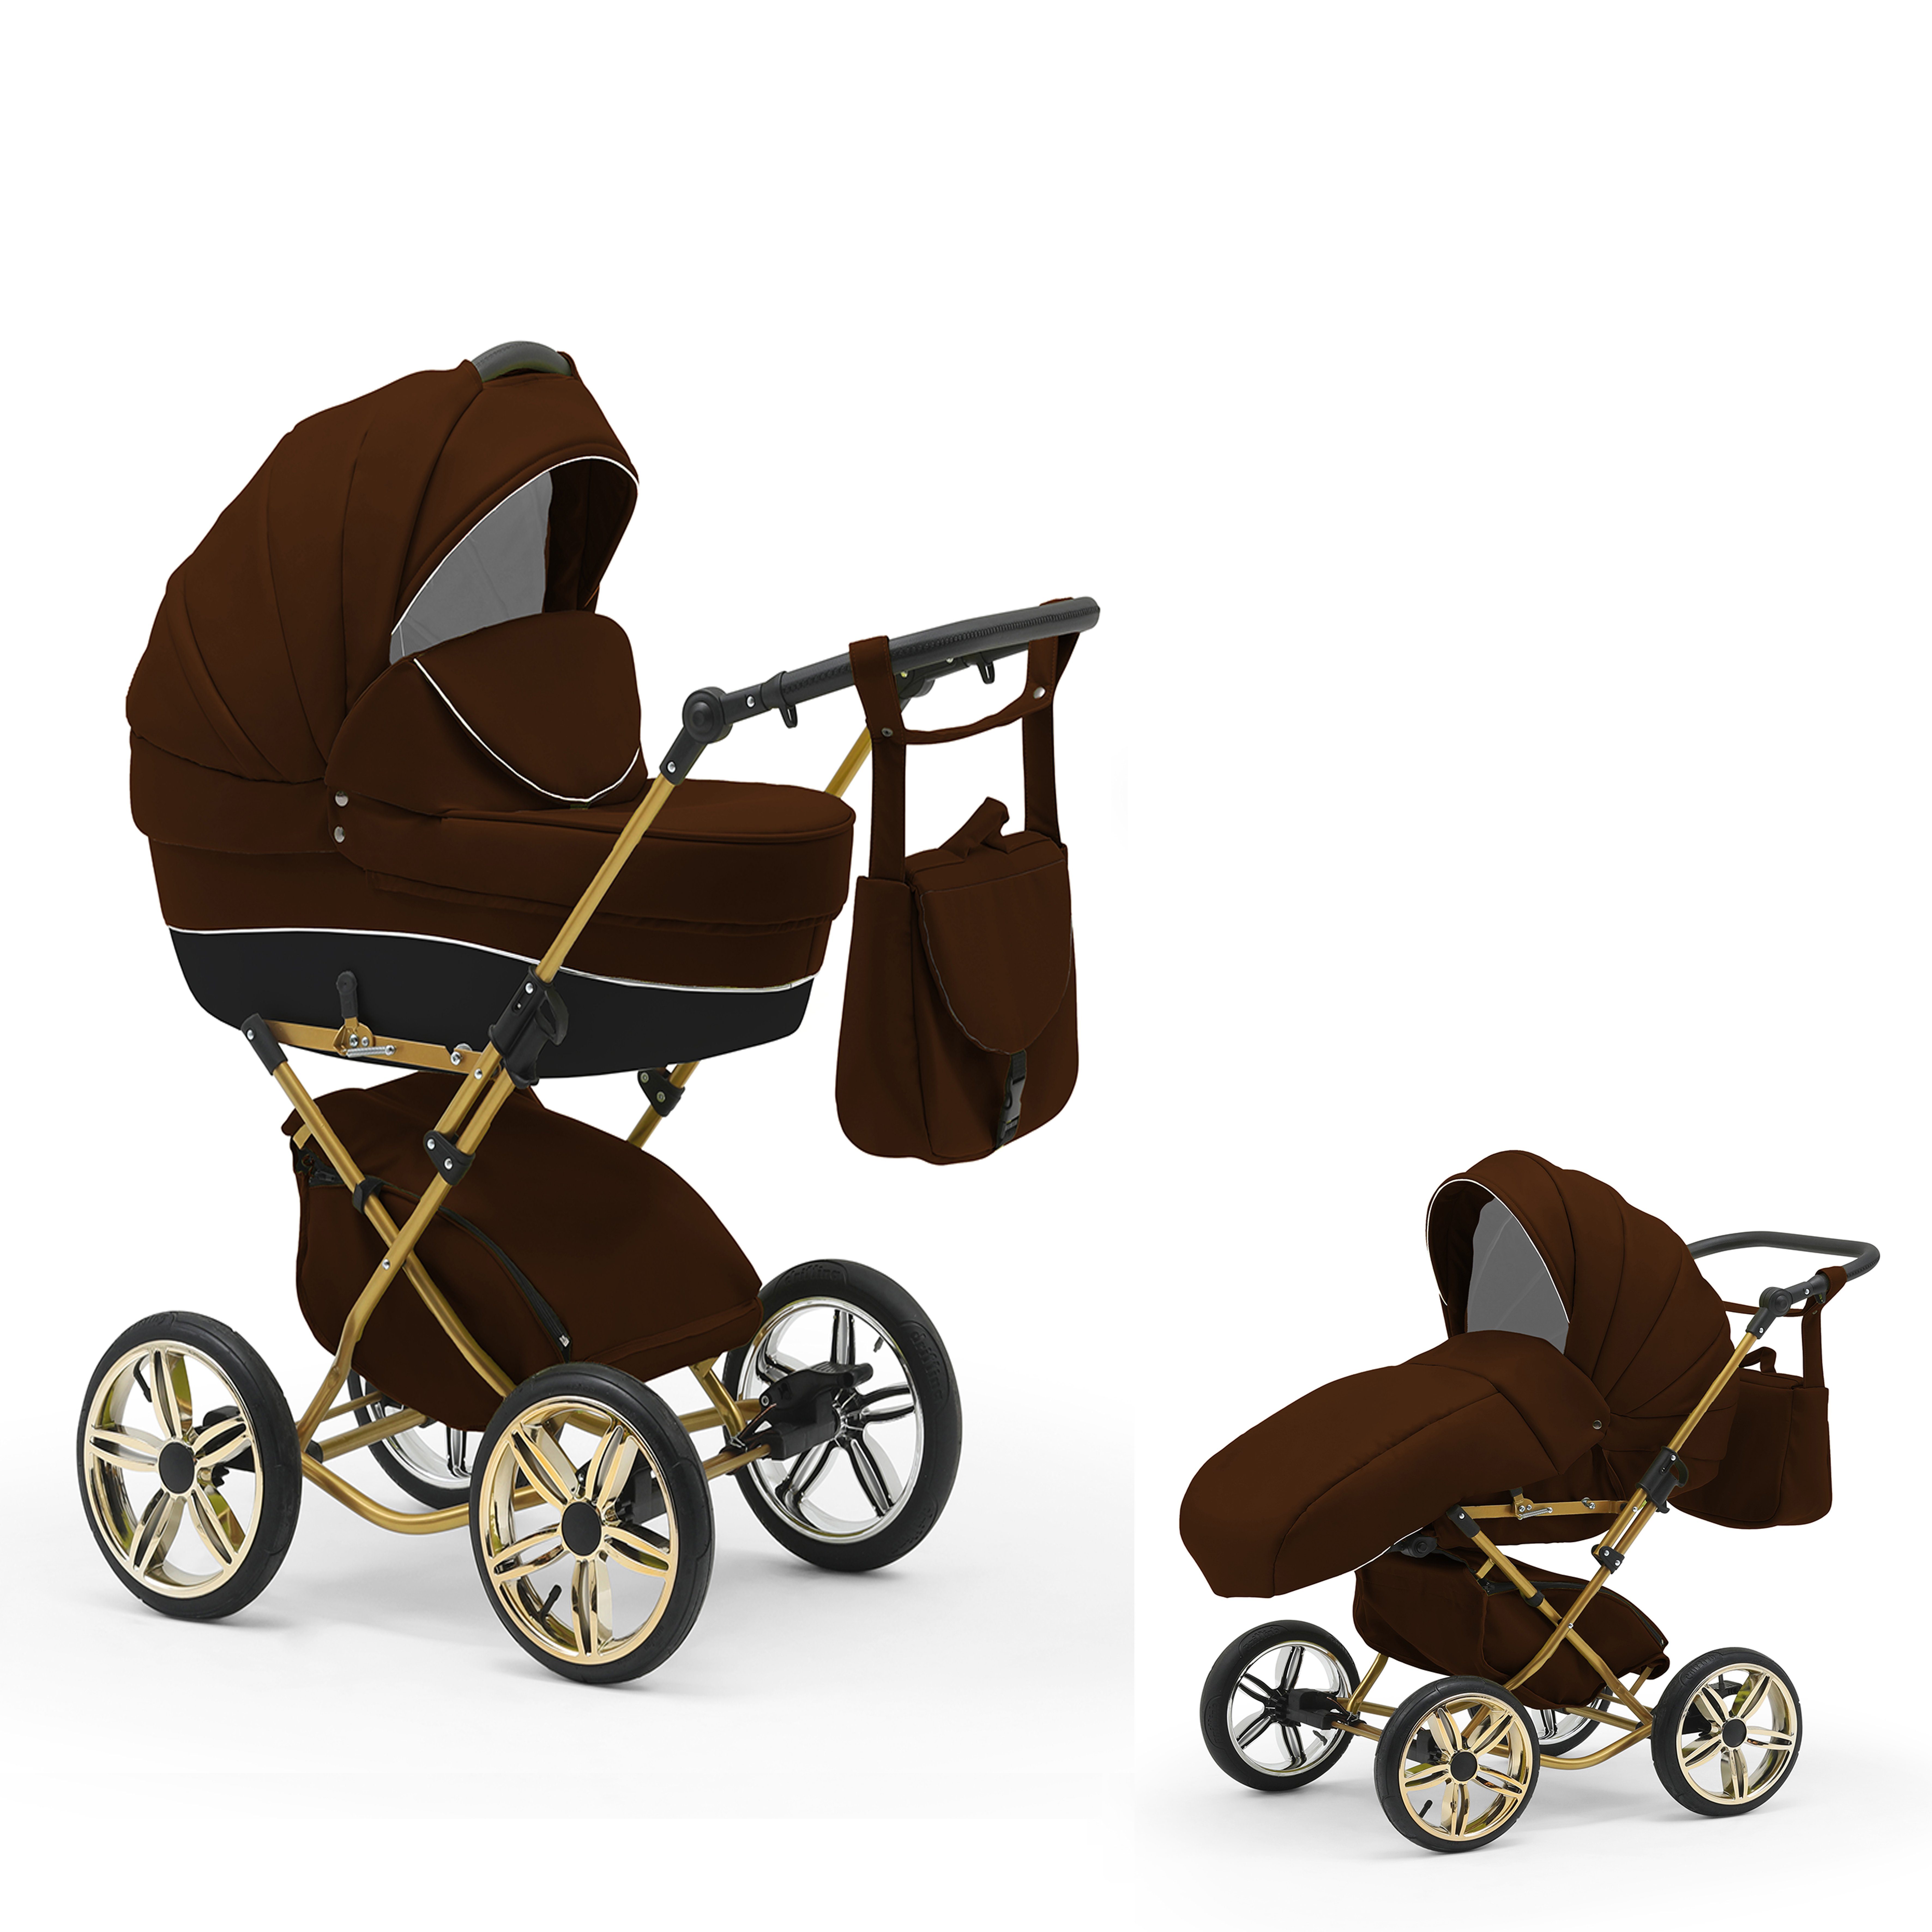 Designs 30 in von 1 in Braun - - Kombi-Kinderwagen Jahre 2 bis 11 Teile Geburt Sorento 4 babies-on-wheels